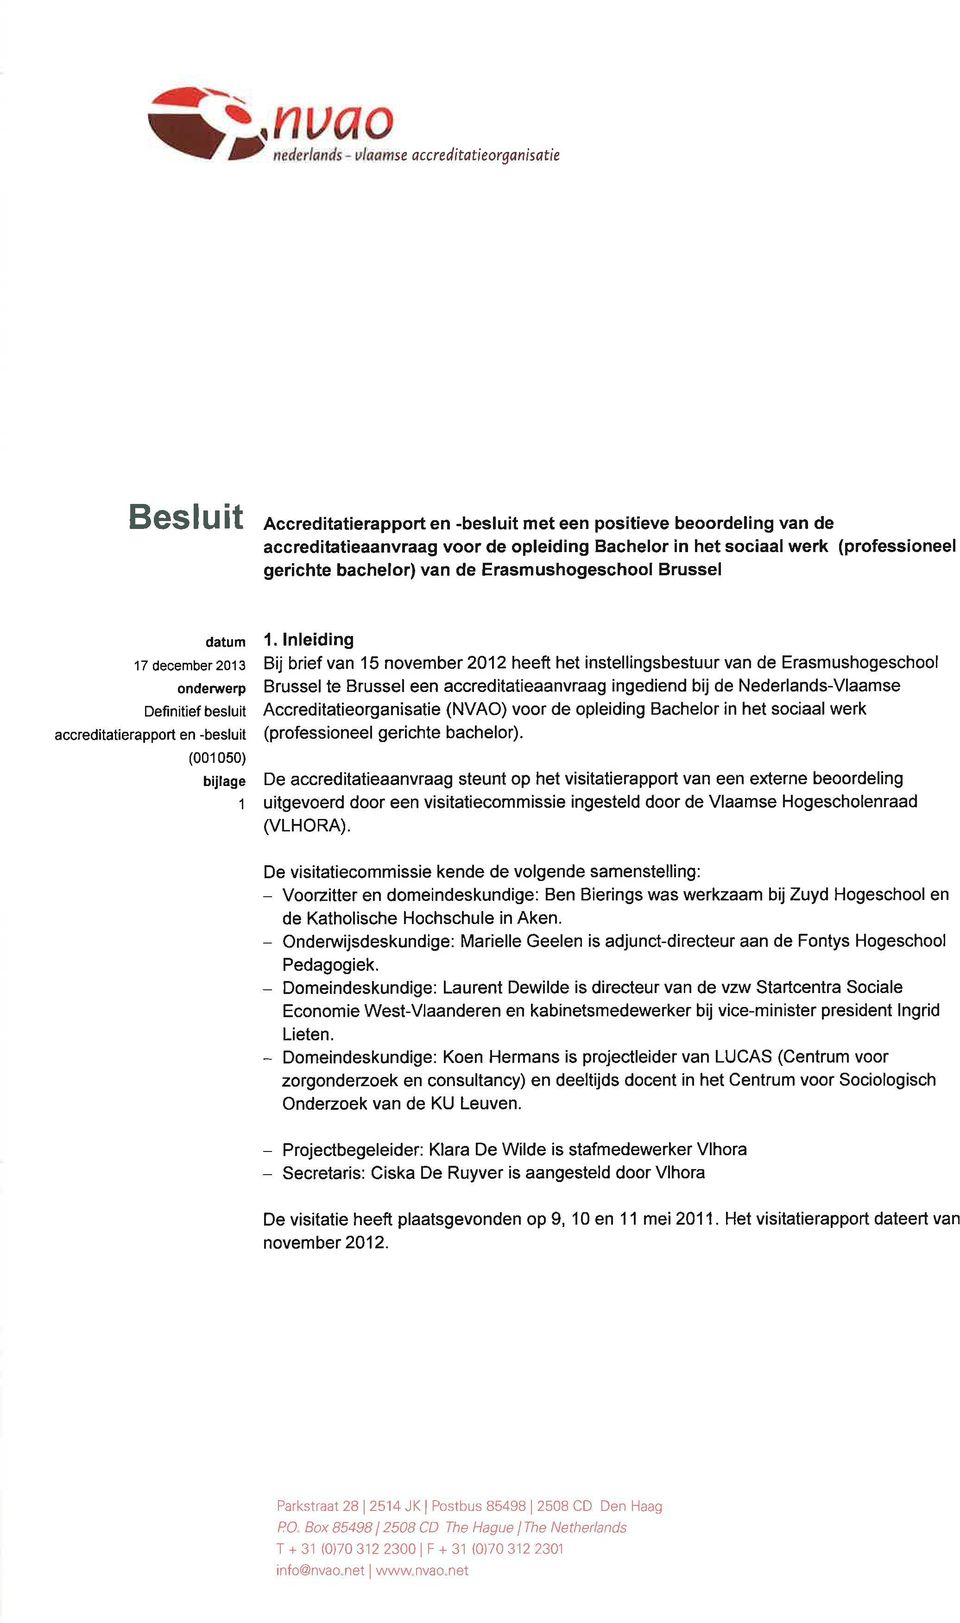 lnleiding Bij brief van 1 5 november 2012 heeft het instellingsbestuur van de Erasmushogeschool Brussel te Brussel een accreditatieaanvraag ingediend bij de Nederlands-Vlaamse Accreditatieorganisatie